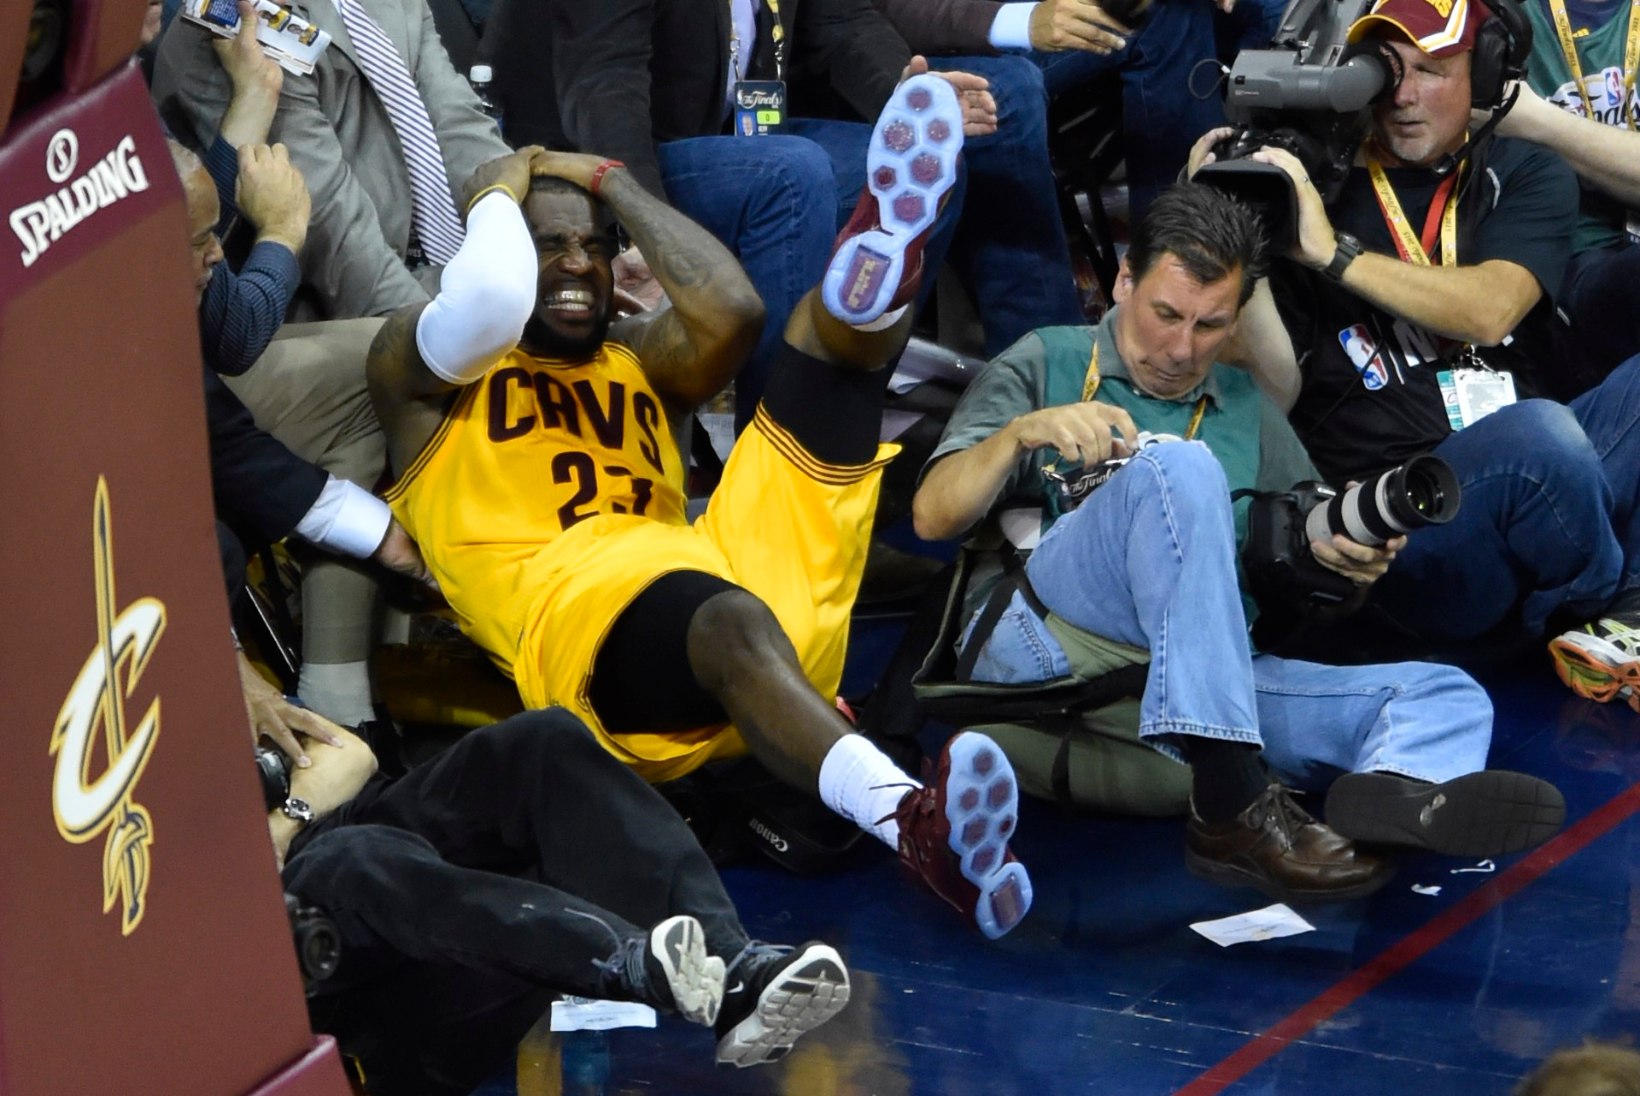 FOTOD | LeBron James lendas peaga vastu kaamerat